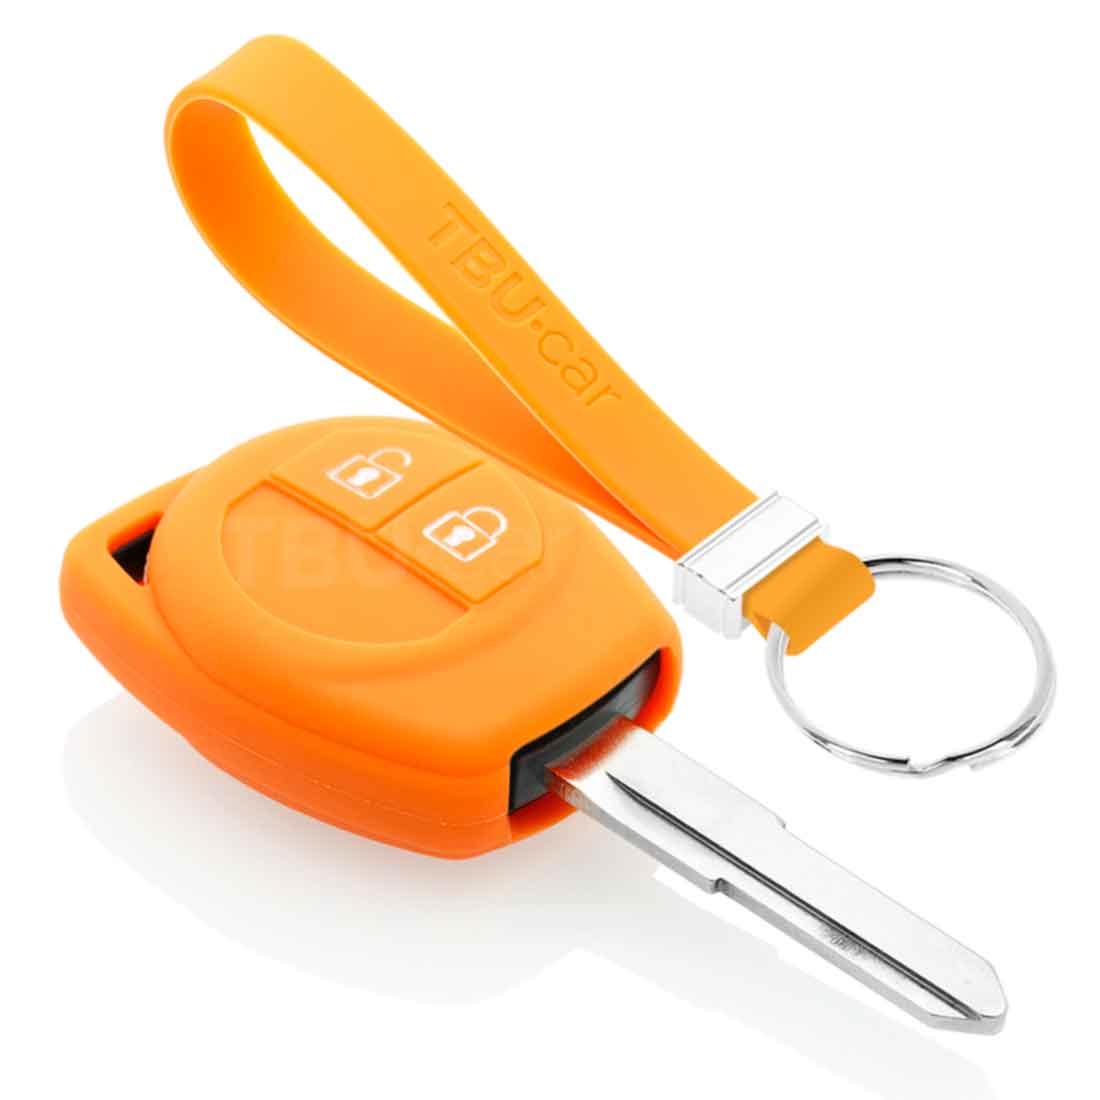 TBU car TBU car Autoschlüssel Hülle kompatibel mit Suzuki 2 Tasten - Schutzhülle aus Silikon - Auto Schlüsselhülle Cover in Orange